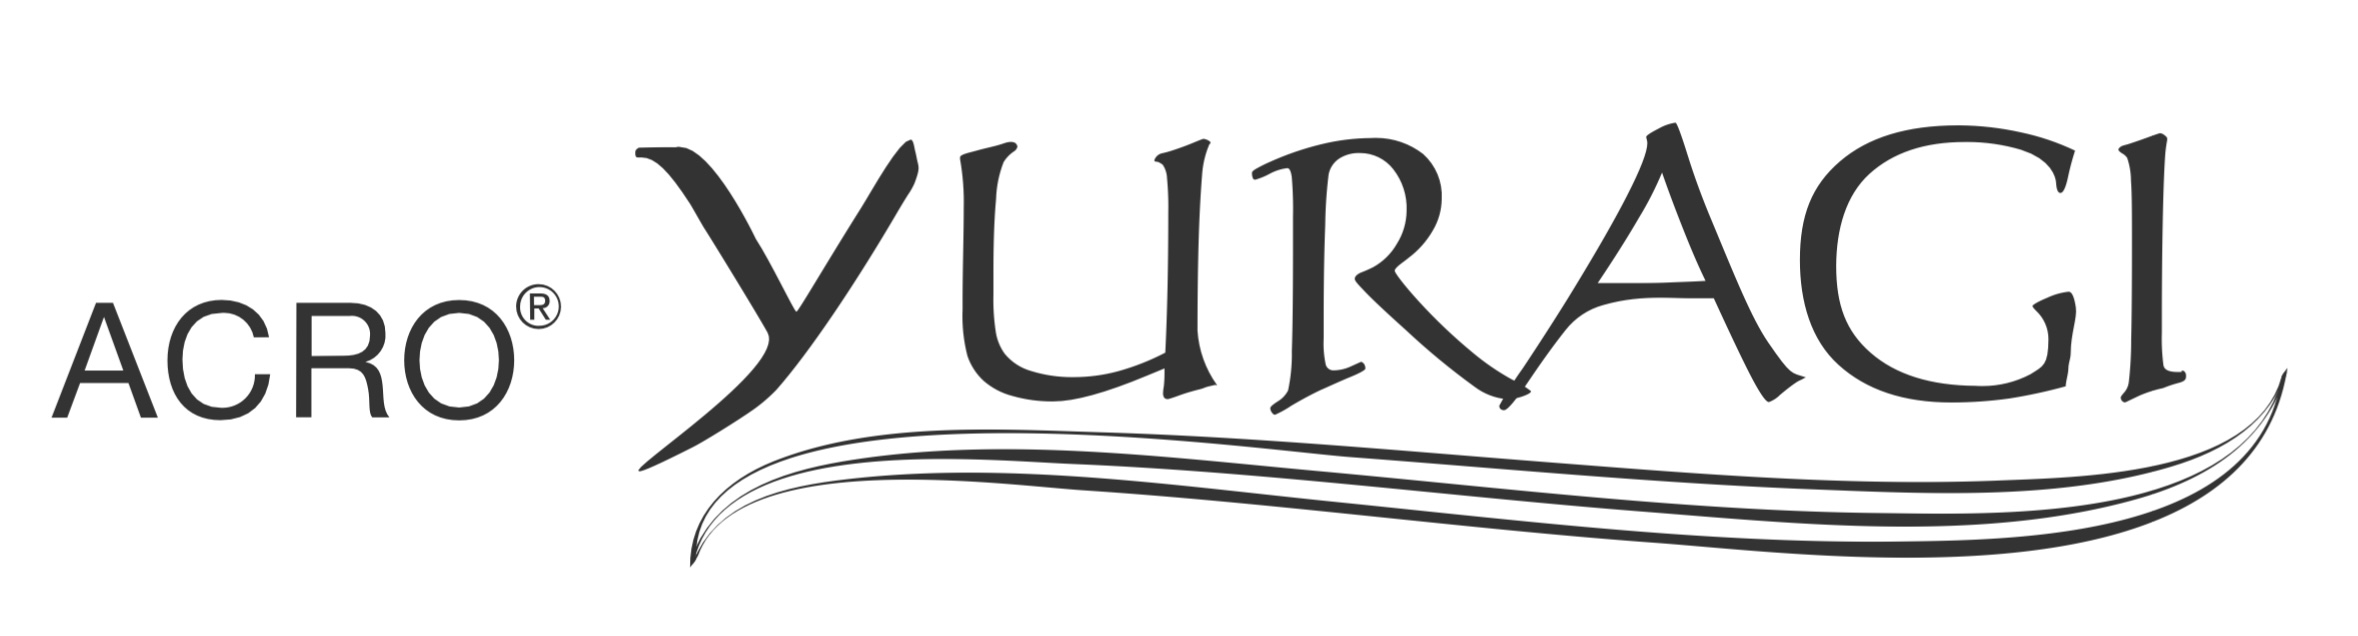 logo yuragi mizutani 